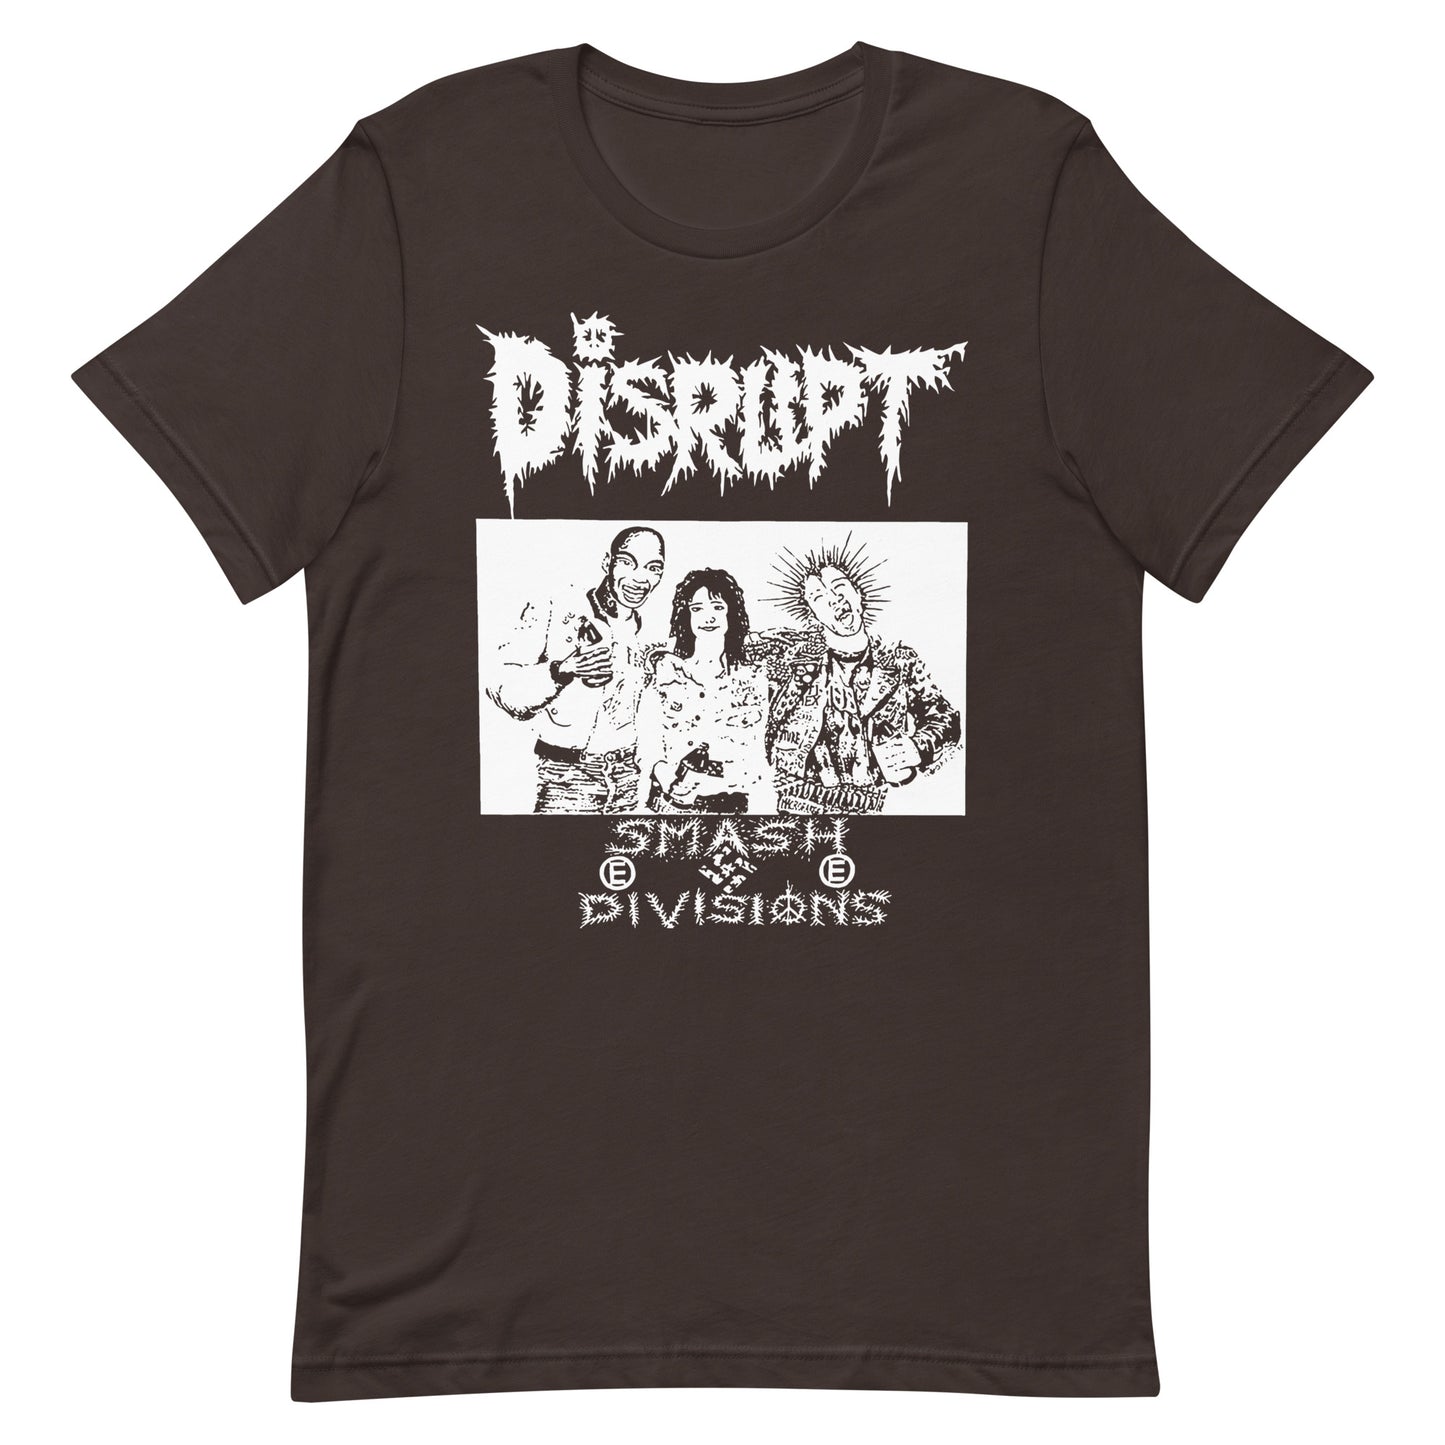 Disrupt - Smash Divisions T-Shirt